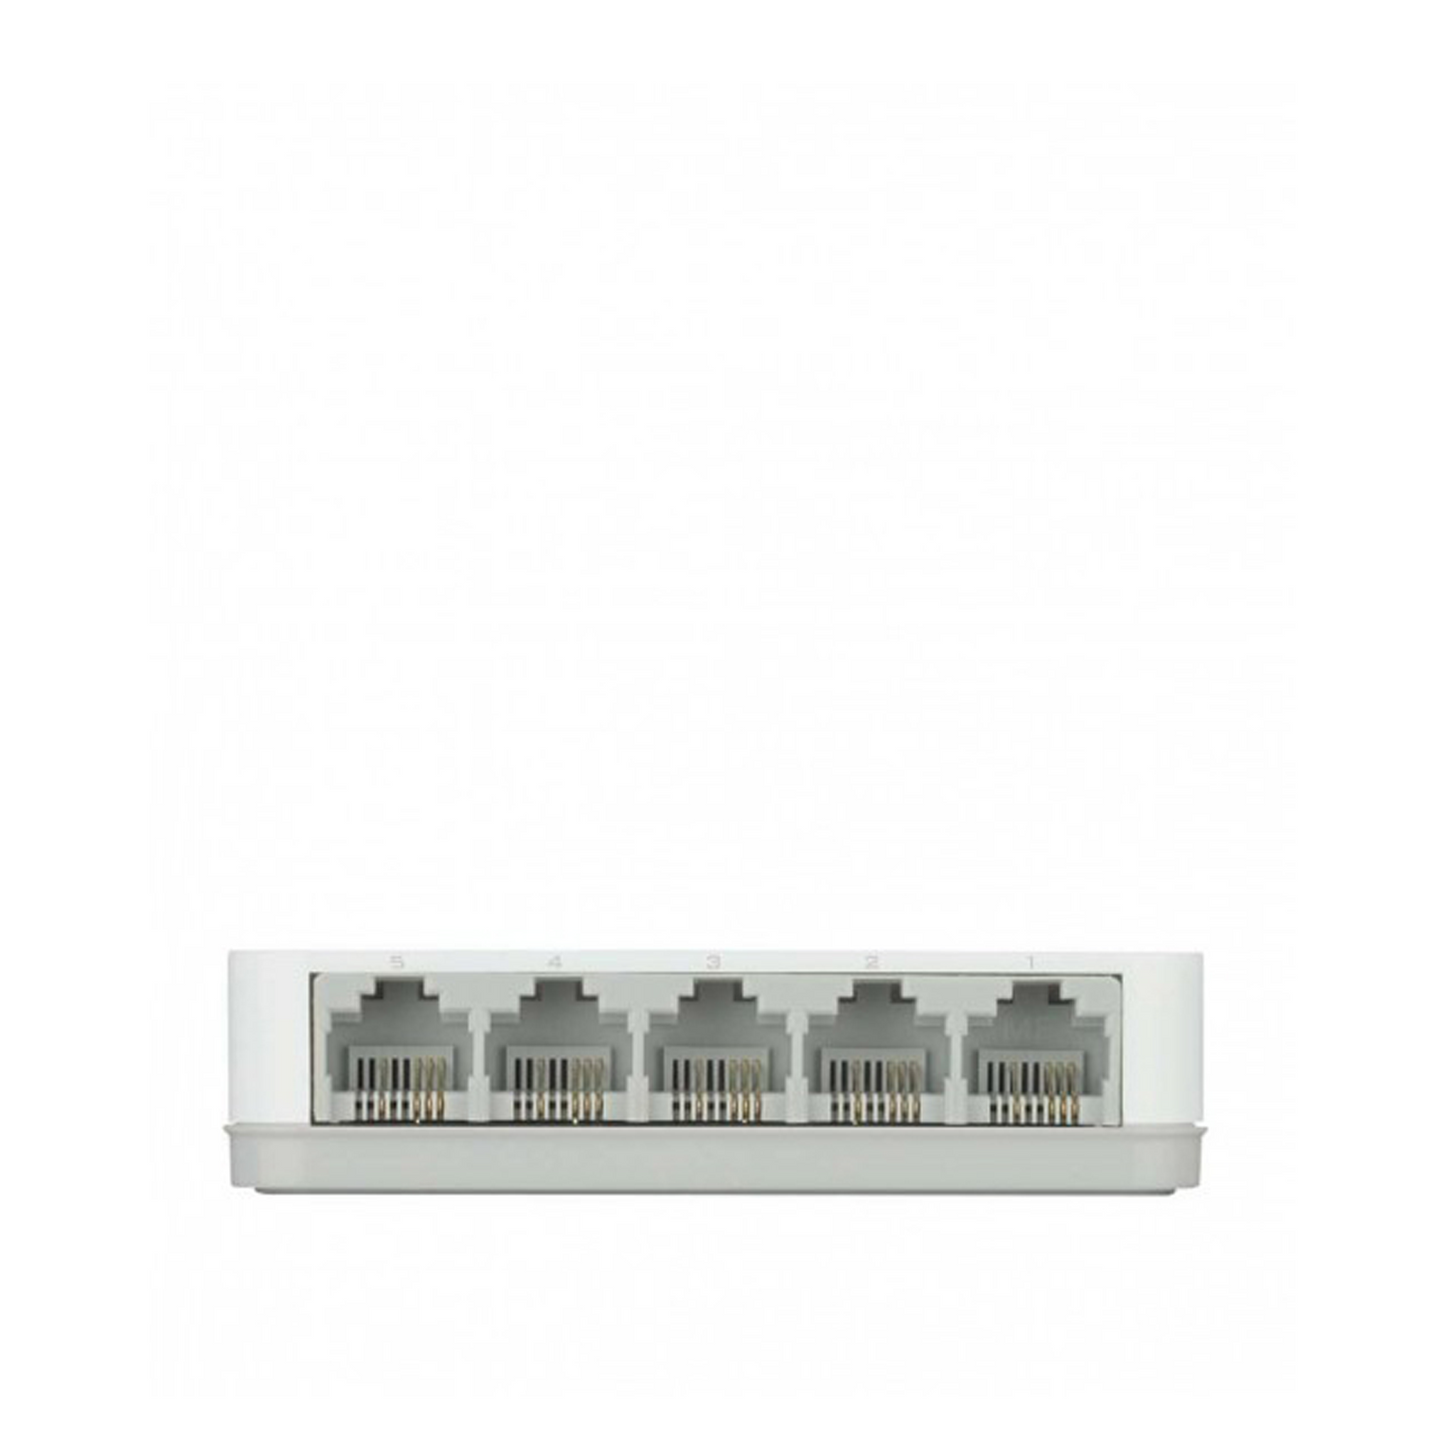 5-Port Fast Ethernet Desktop Switch In Plastic Casing | DES-1005A